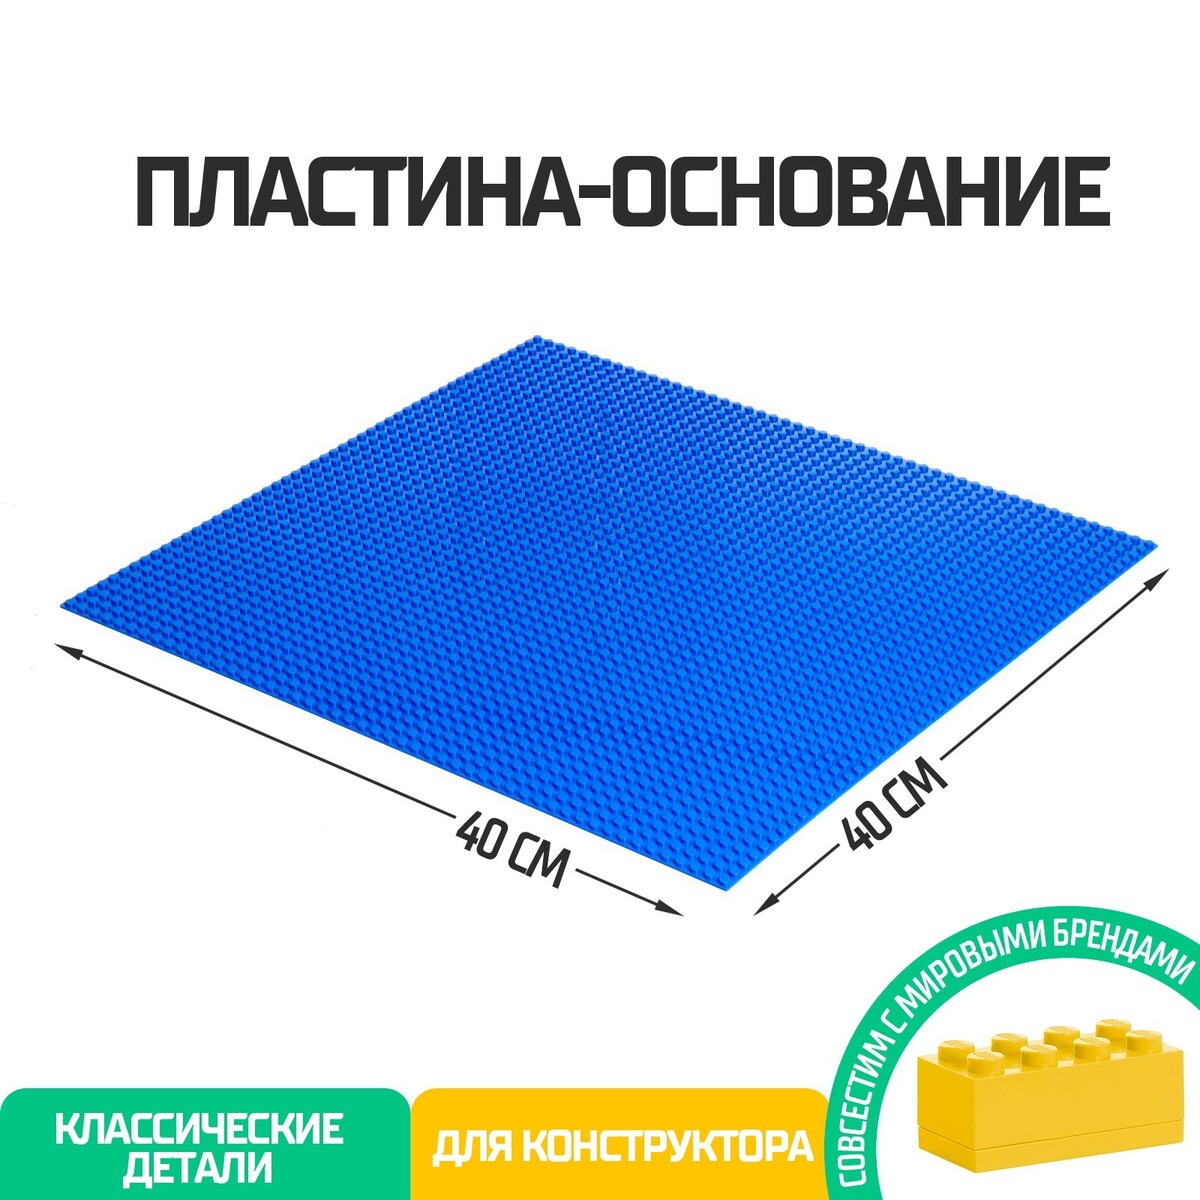 Пластина-основание для конструктора, 40 × 40 см, цвет синий пластина основание для конструктора 40 × 40 см салатовый